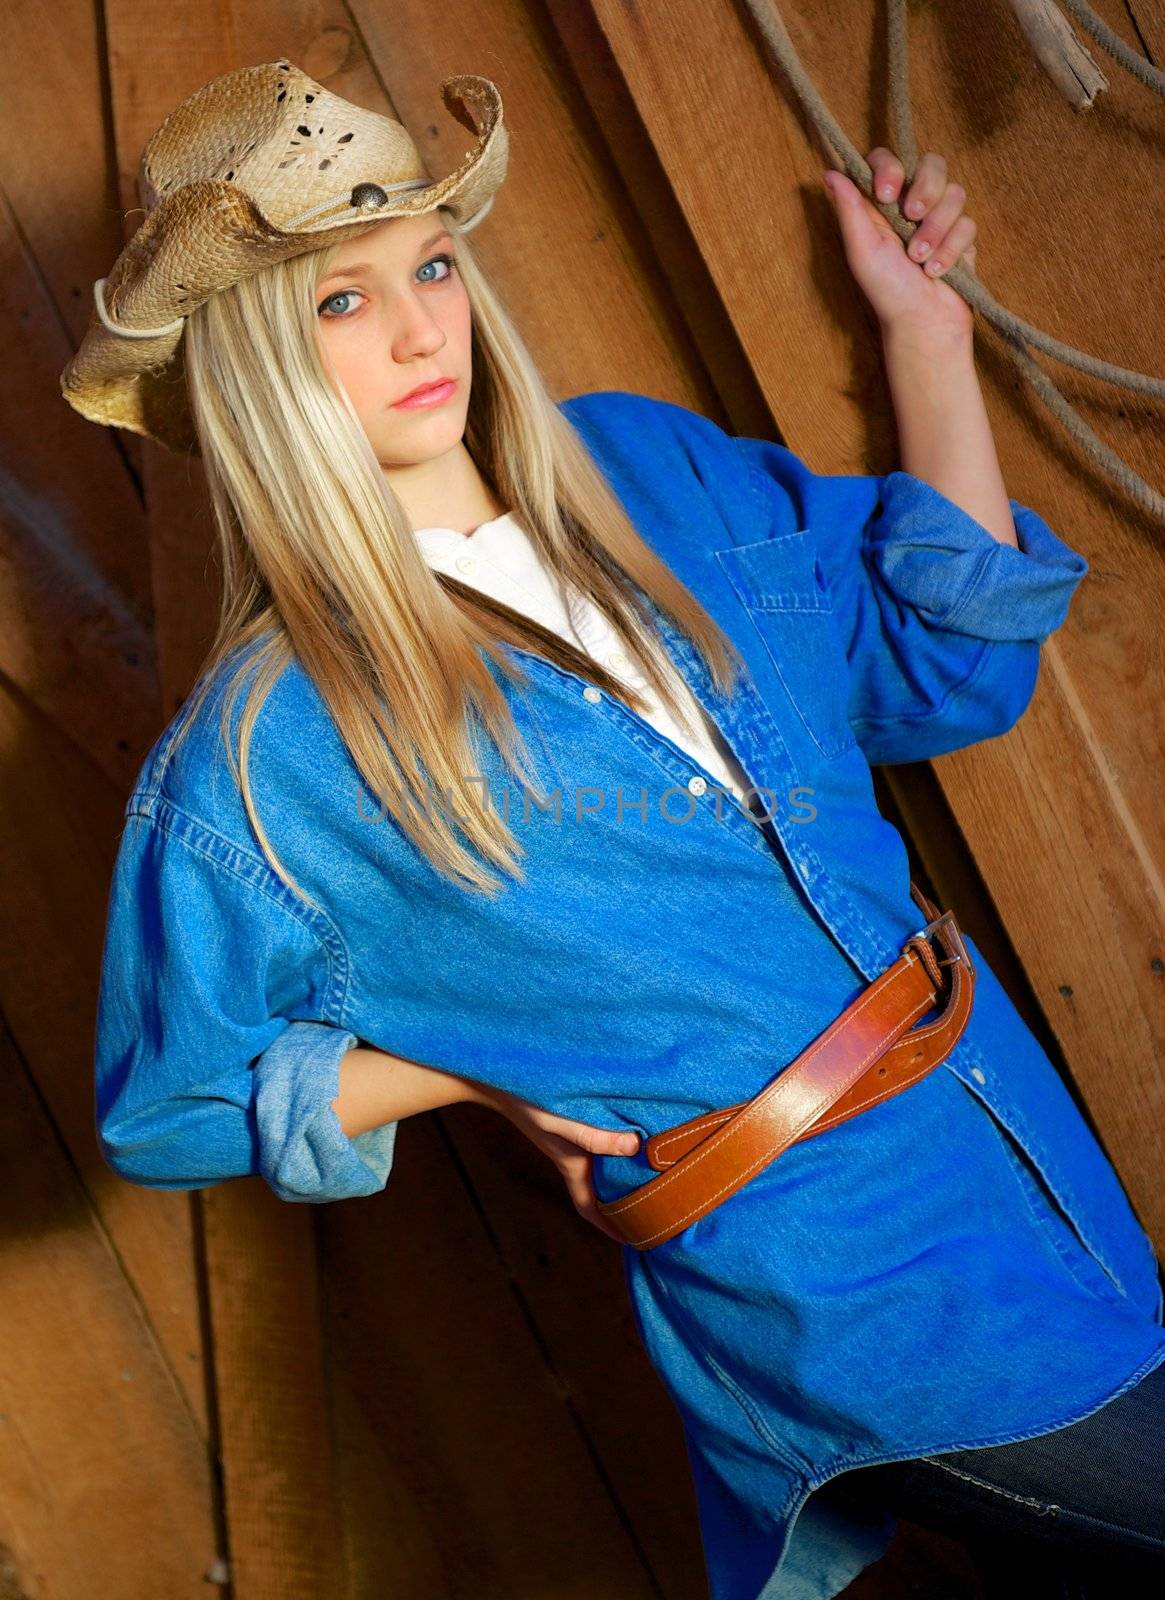 Beautiful, blond, teen model looks pensive as she wears a leather belt